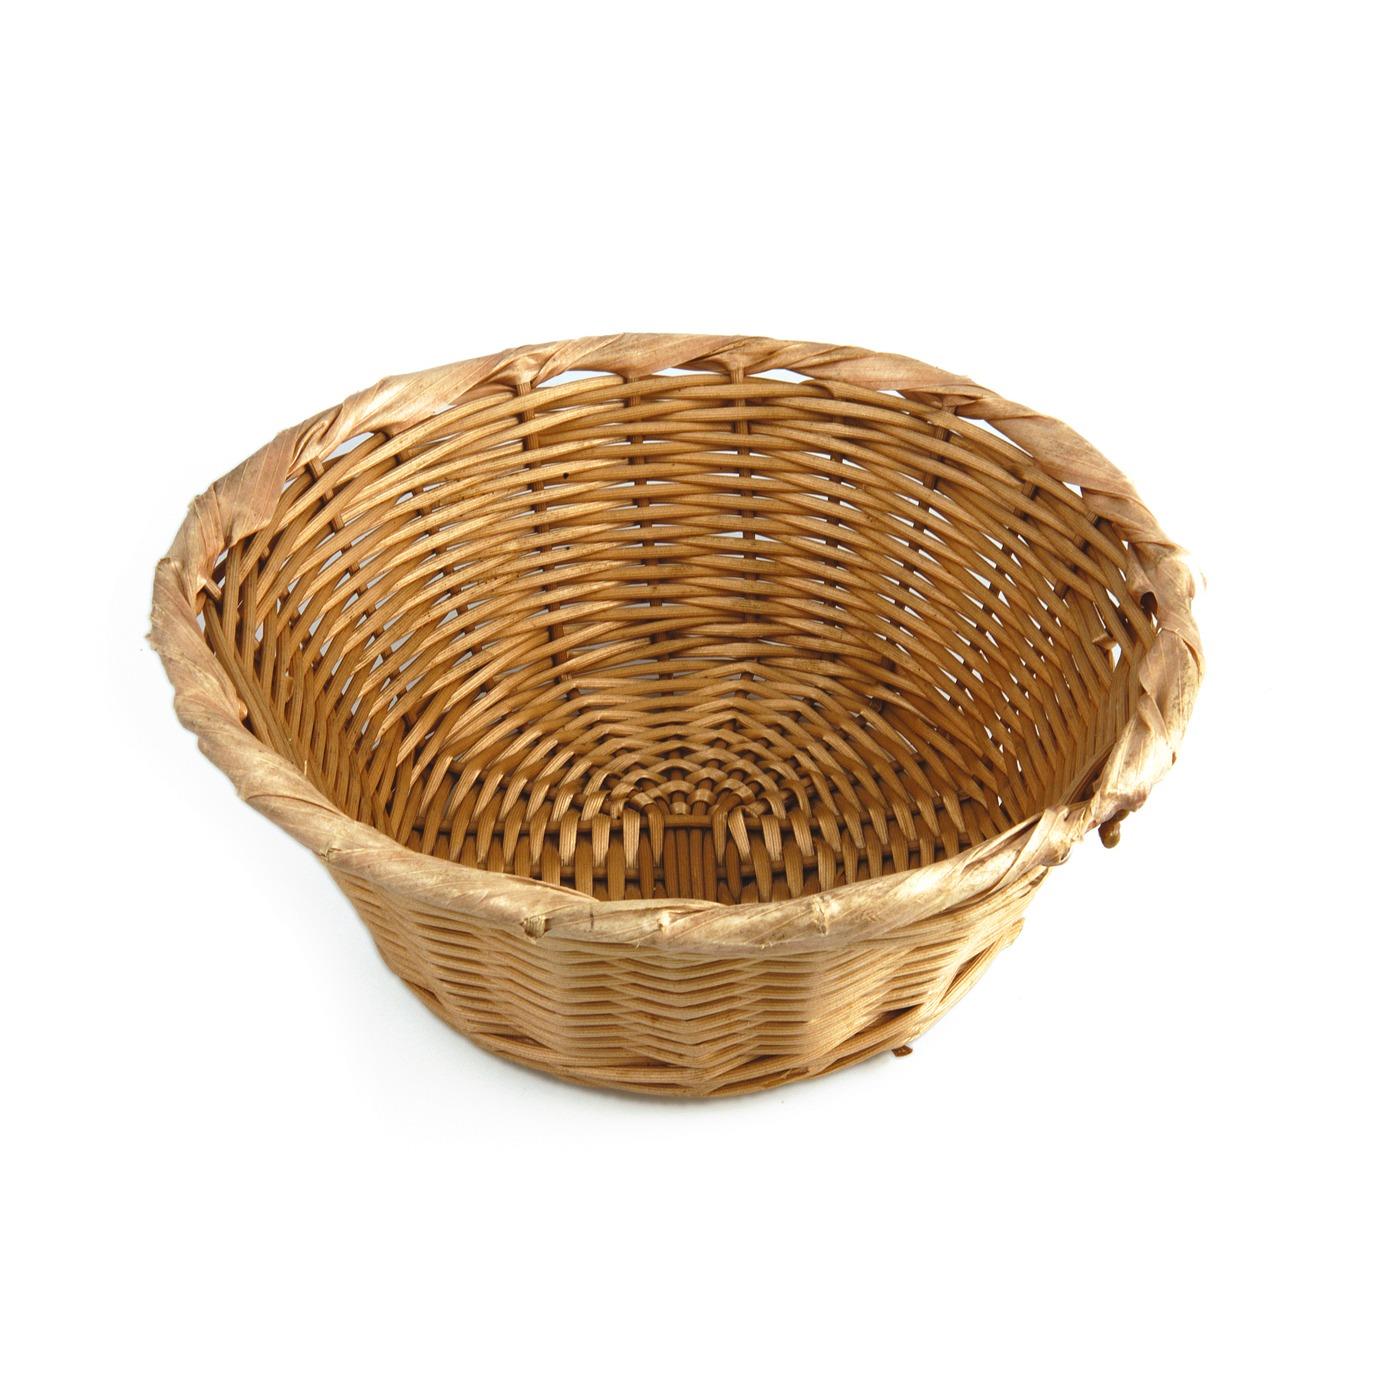 Woven Bread Basket - Medium Woven